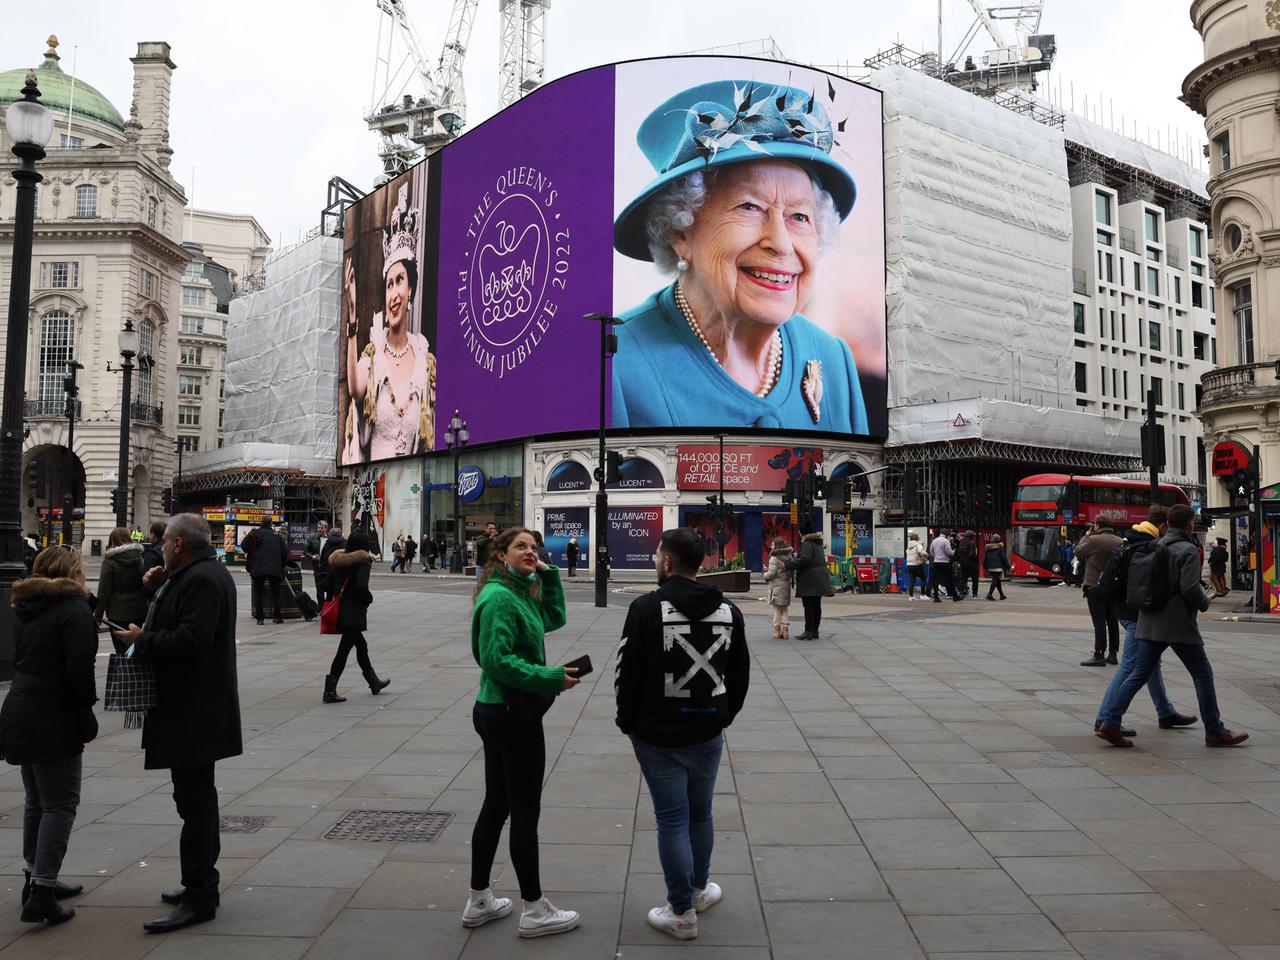 Porträts von Queen Elizabeth II. hängen auf großen Monitoren am Piccadilly Circus in London.